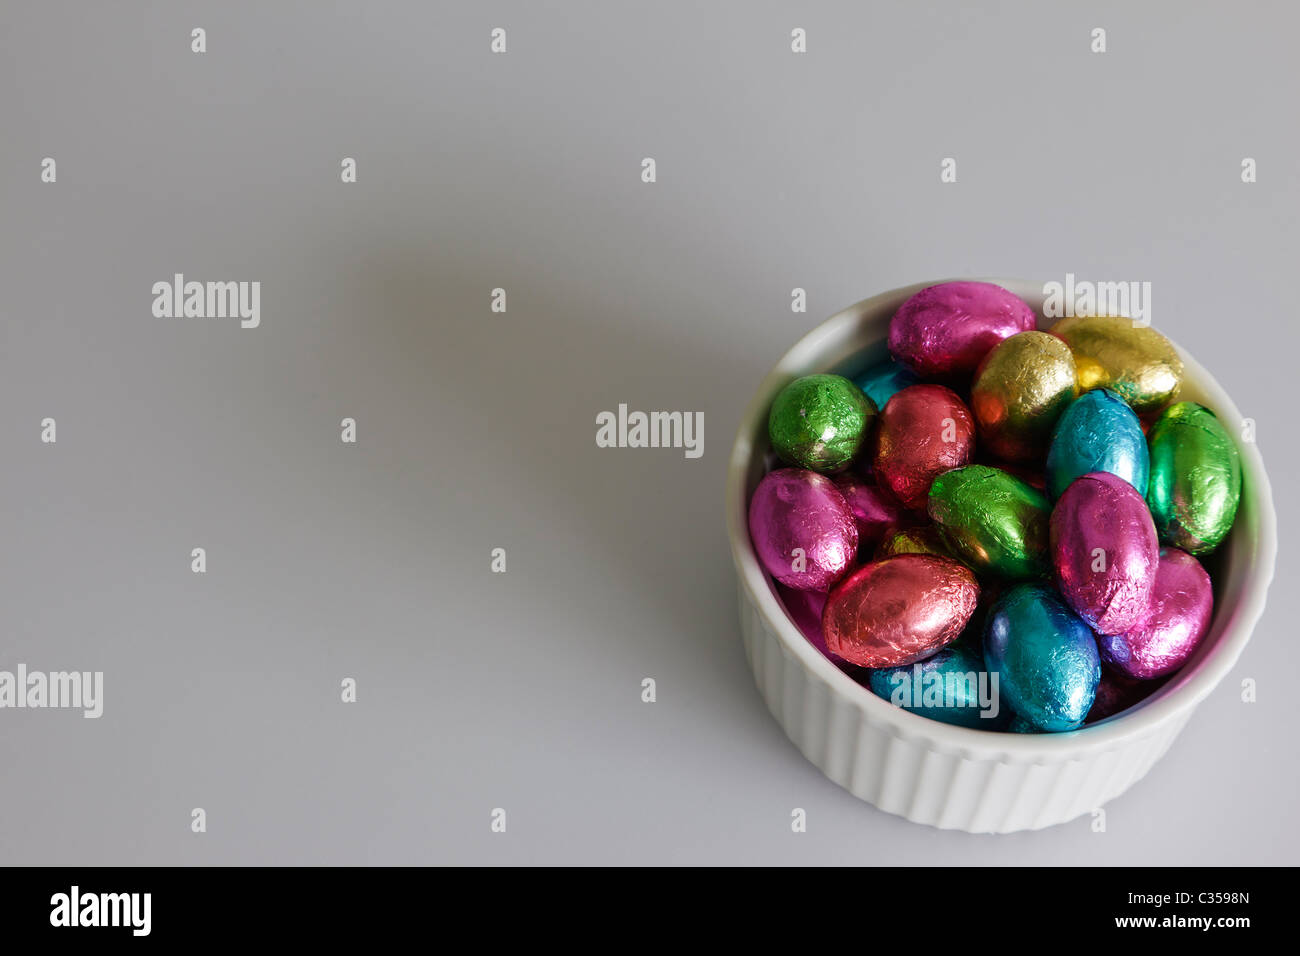 Un tazón de diminutos huevos de chocolate, envuelto en lámina de múltiples colores contra un fondo gris. Foto de stock